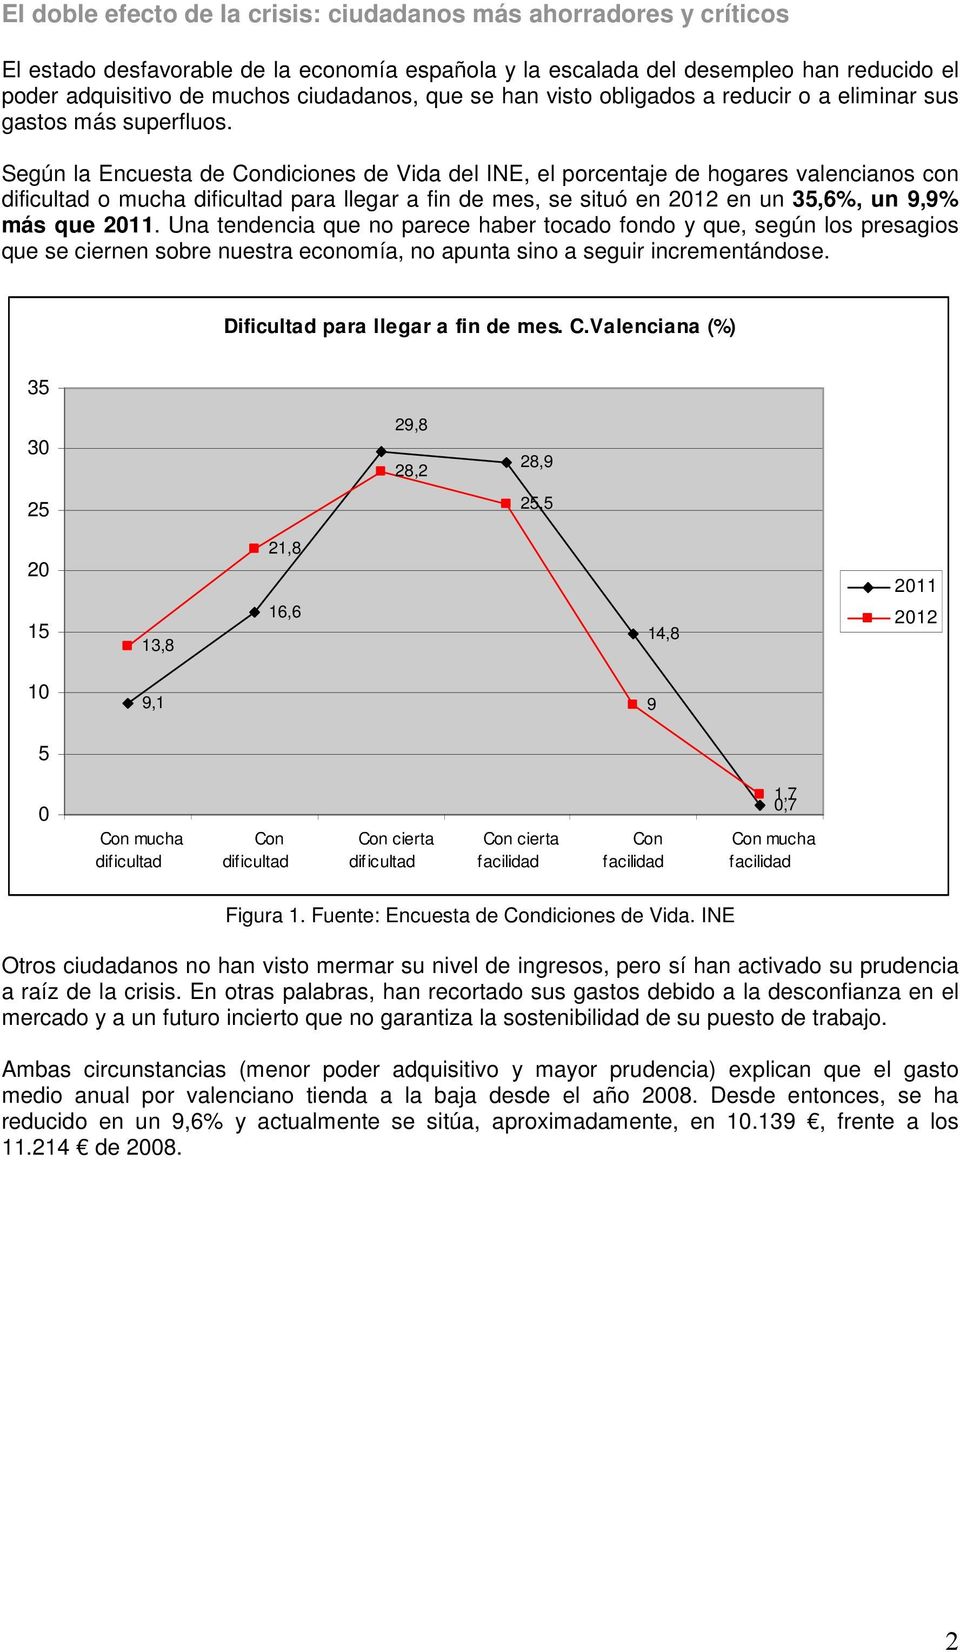 Según la Encuesta de Condiciones de Vida del INE, el porcentaje de hogares valencianos con dificultad o mucha dificultad para llegar a fin de mes, se situó en 2012 en un 35,6%, un 9,9% más que 2011.